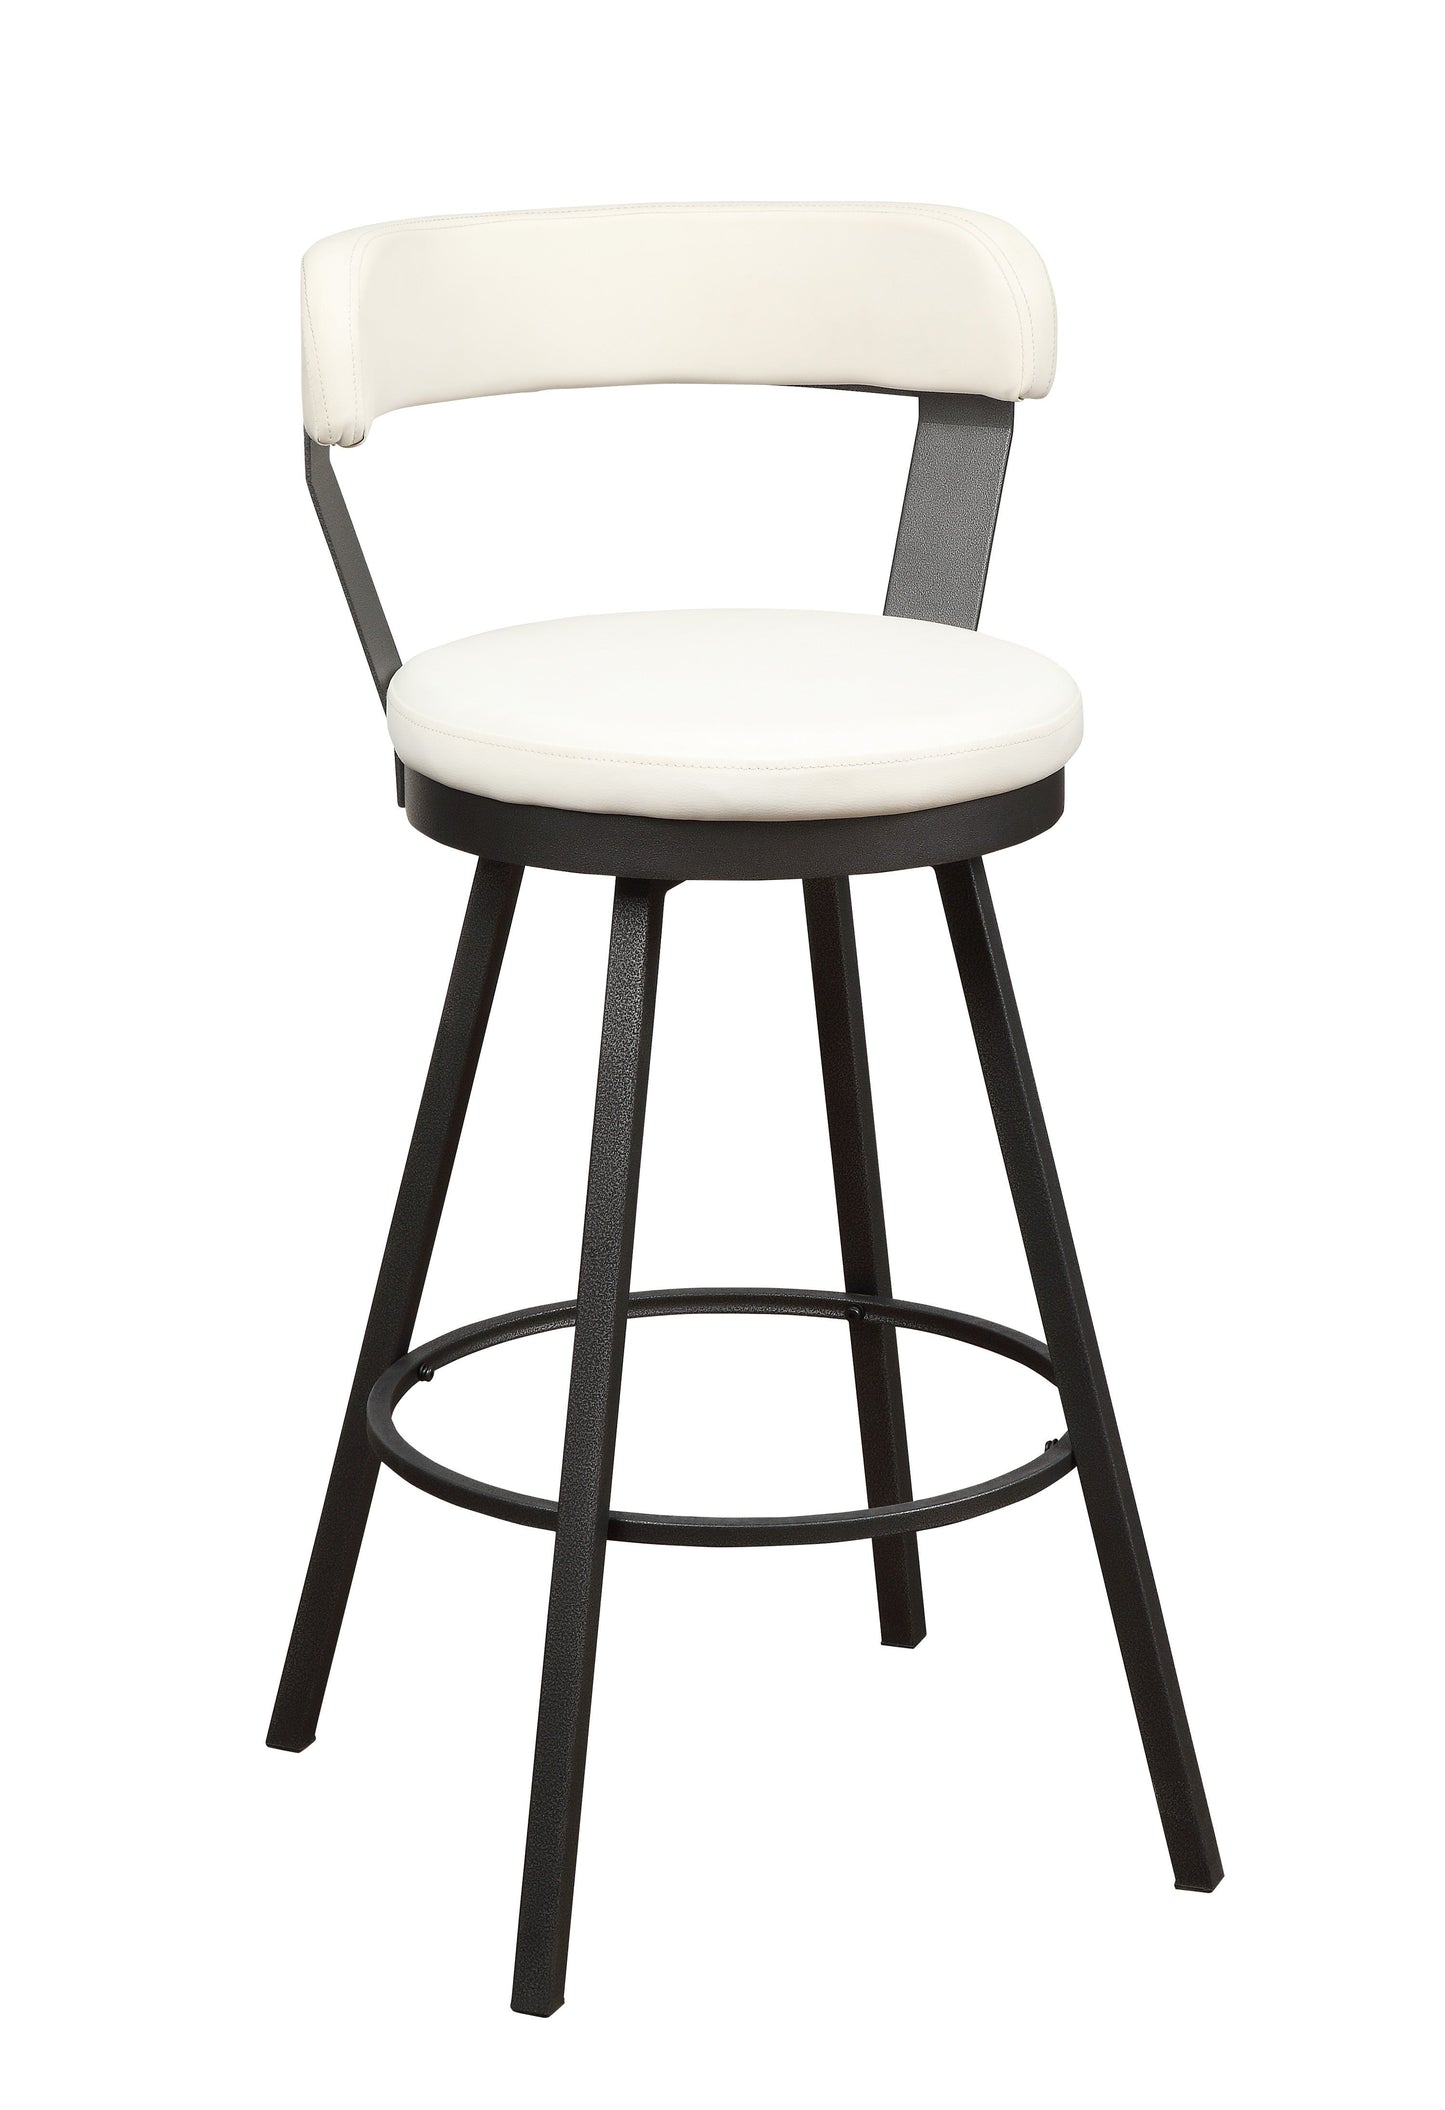 Appert White/Dark Gray Swivel Pub Height Chair, Set of 2